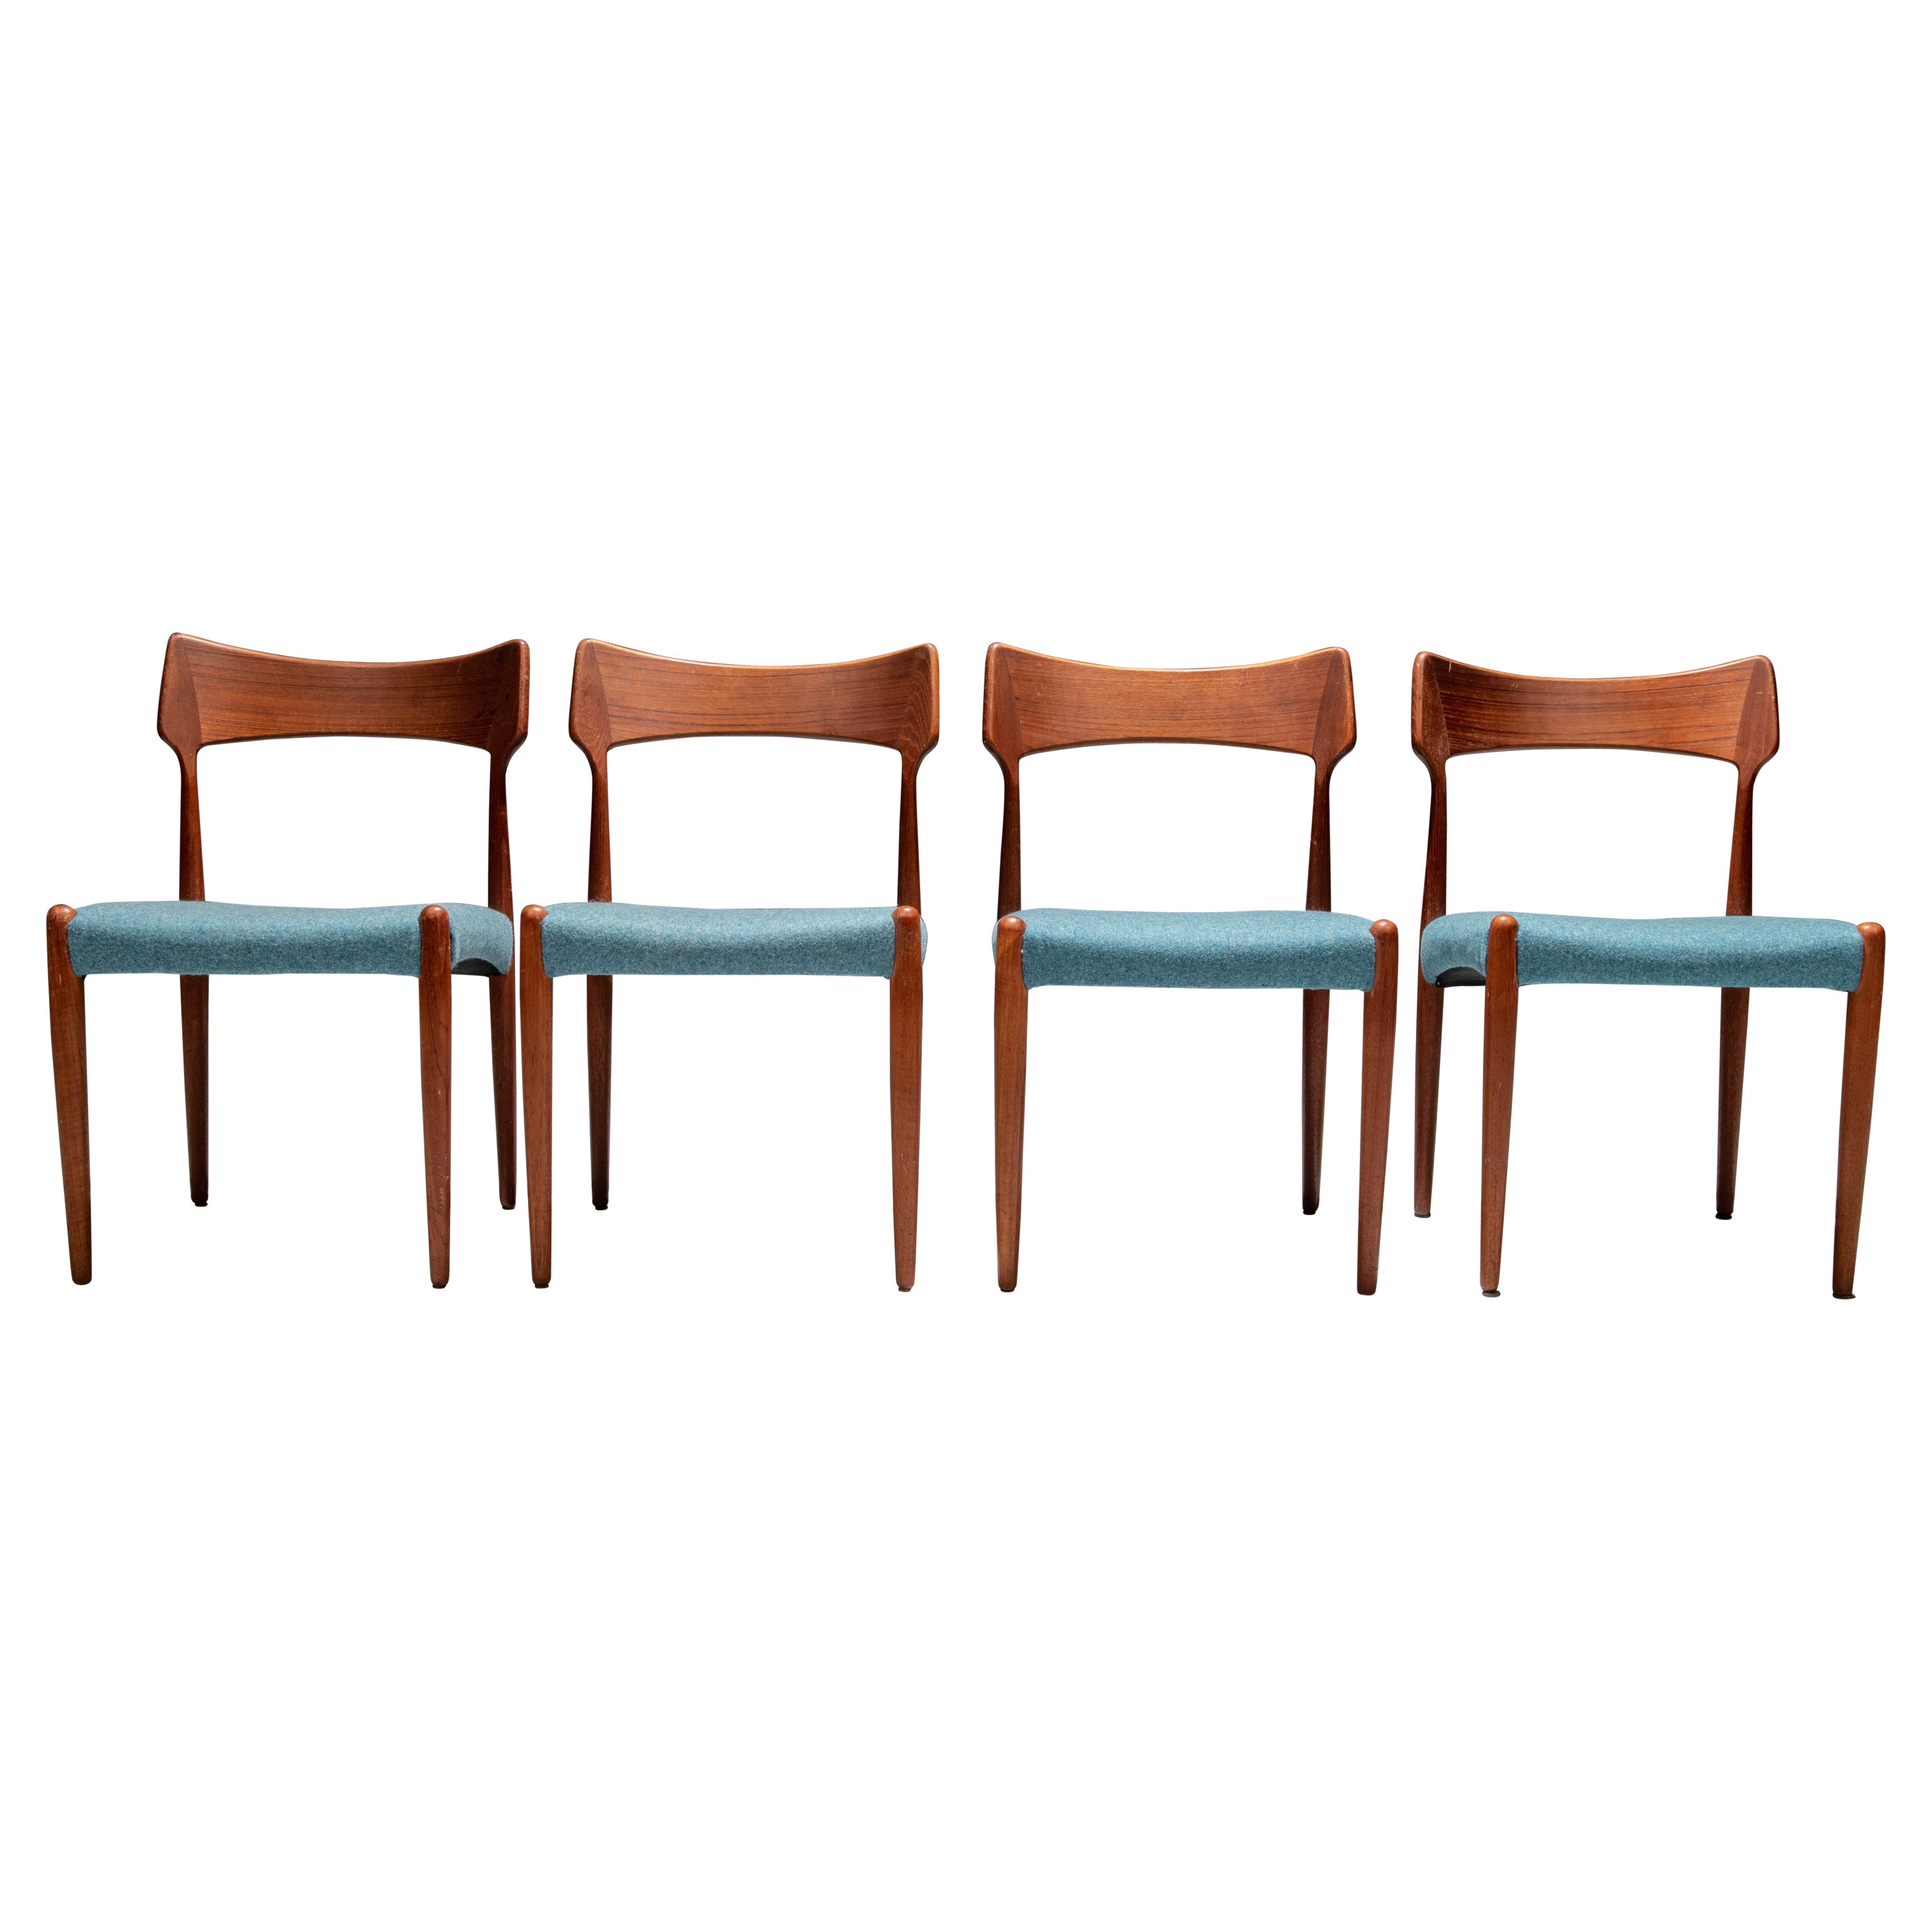 Set of 4 Dining Room Chairs by C. Linneberg for B. Pedersen, Denmark, 1970's For Sale